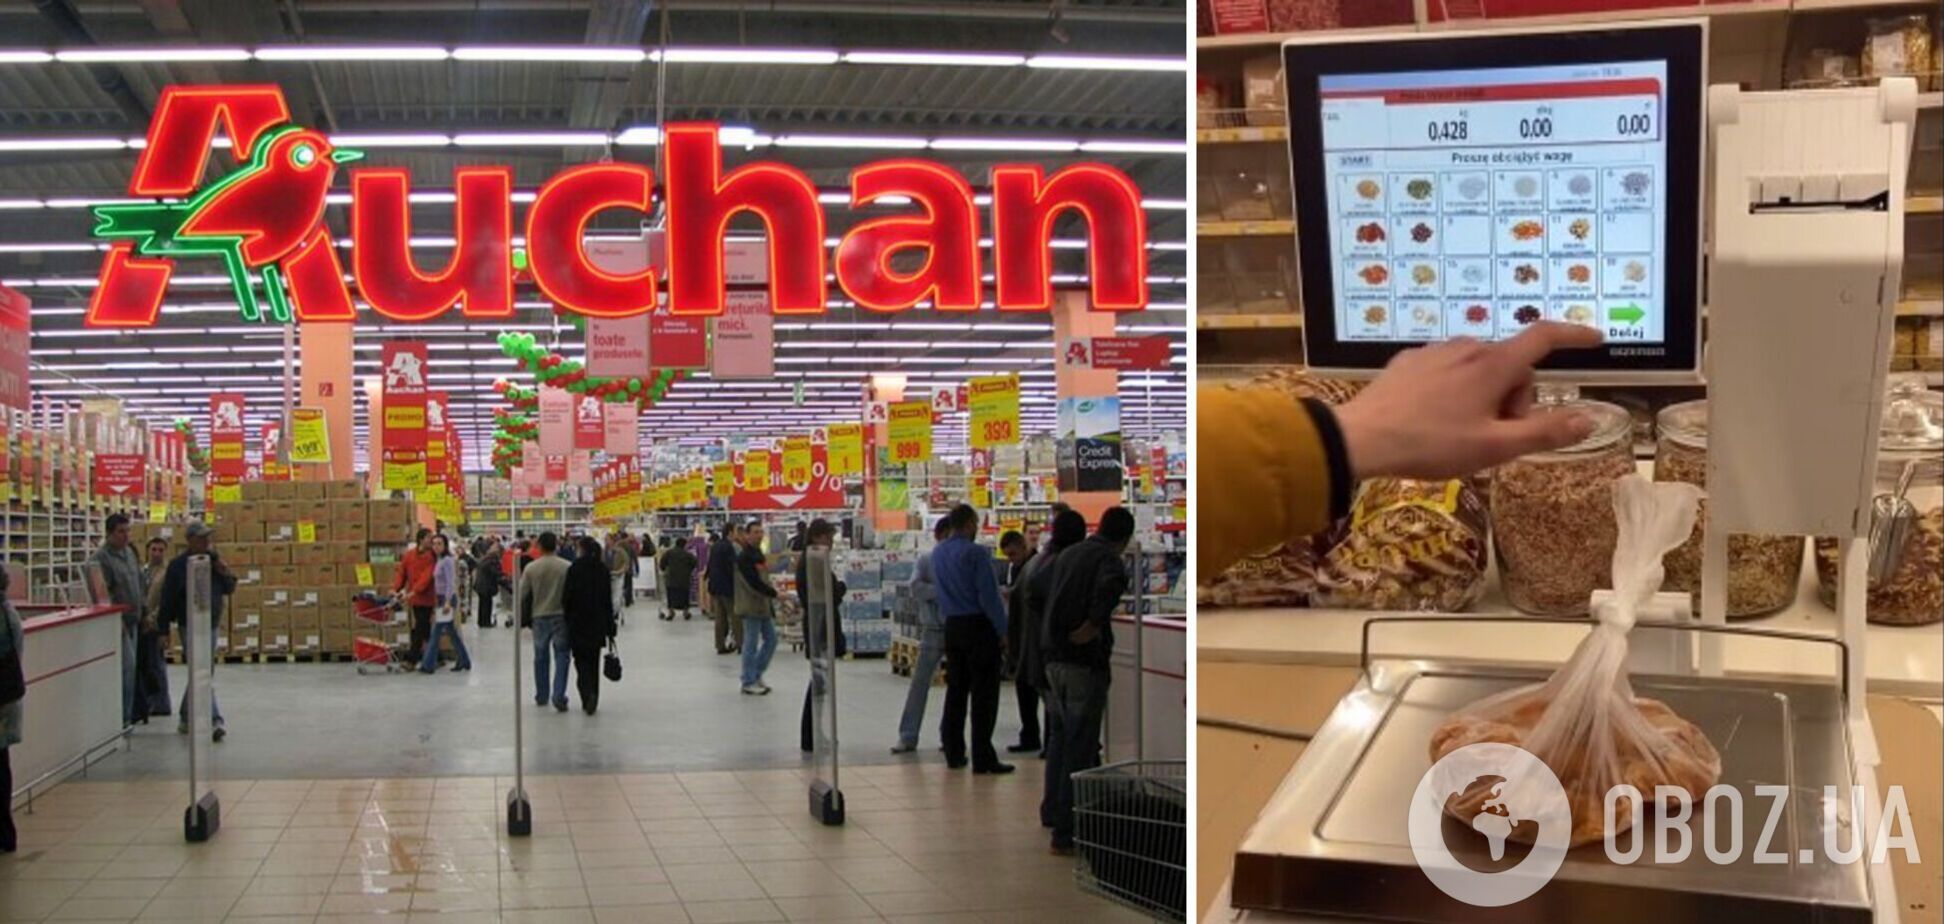 В сети показали, как в польском супермаркете обманывают покупателей